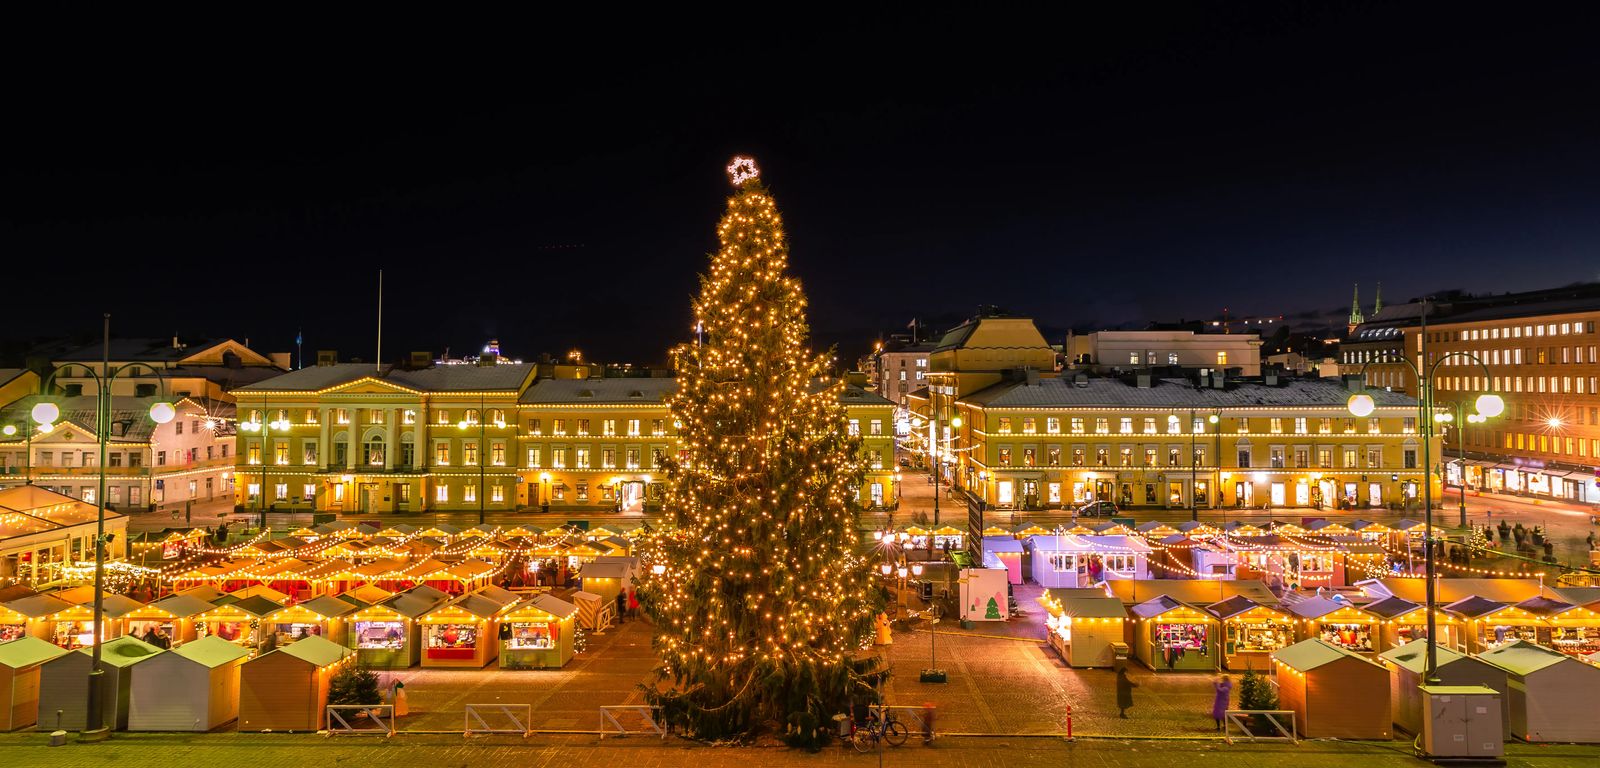 Helsinki Christmas Market in Finland